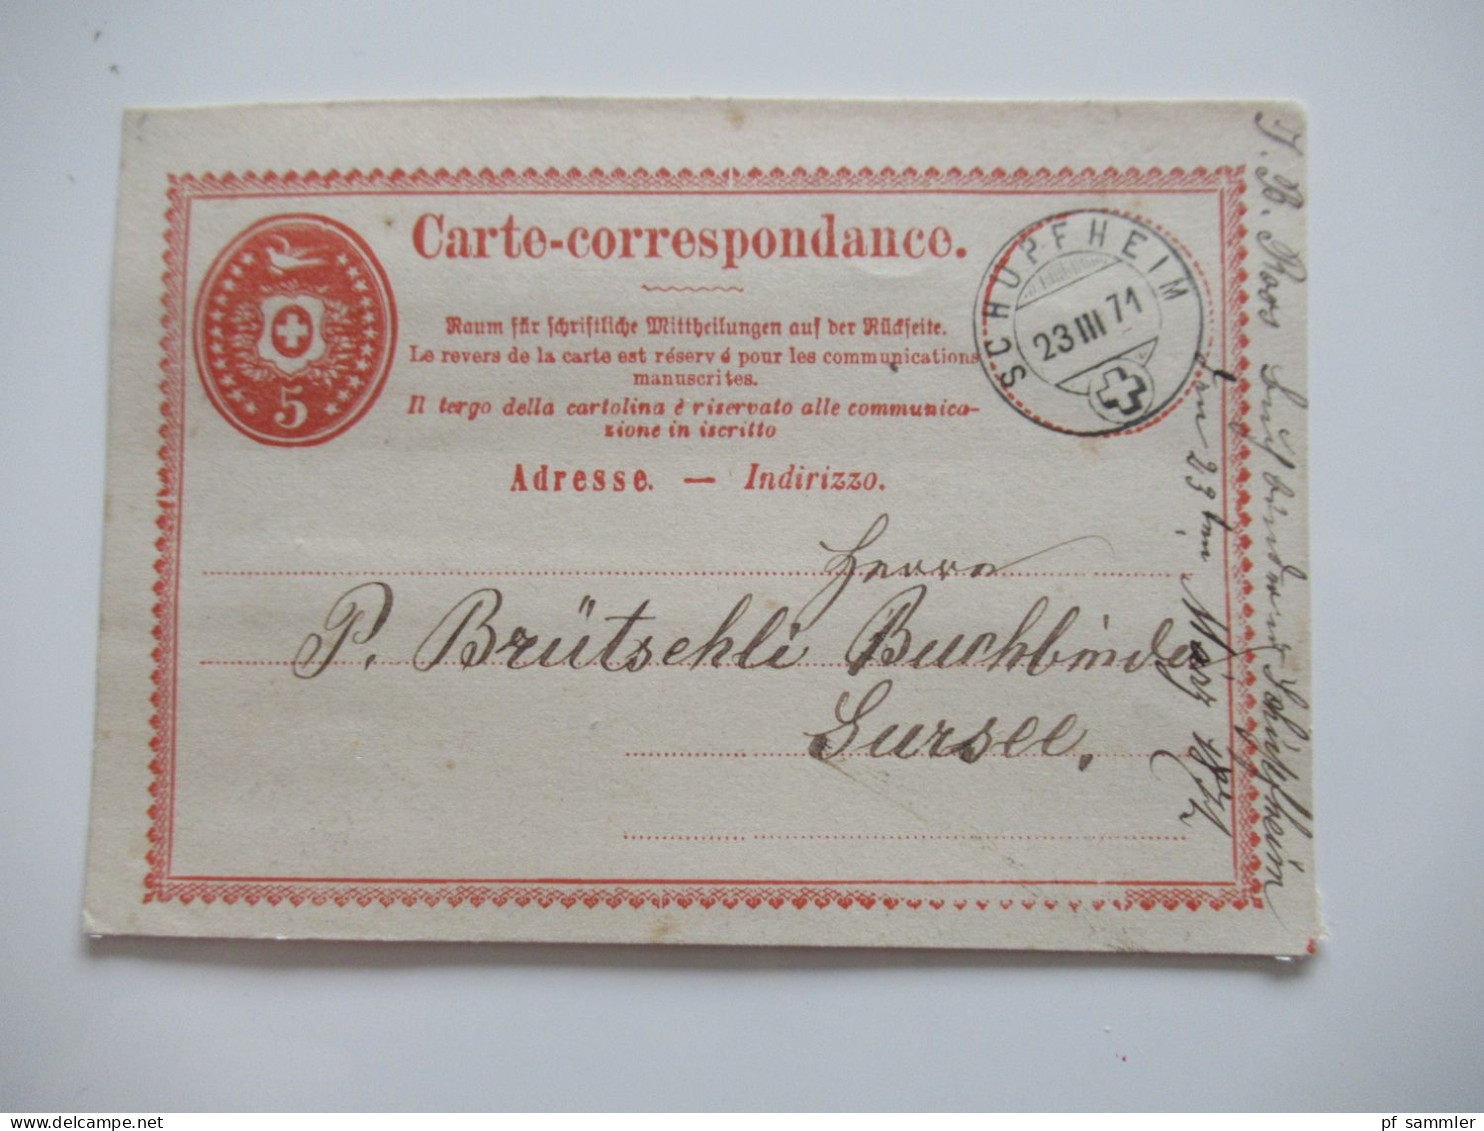 Schweiz interessanter Ganzsachen Posten ab 1871 / gebraucht und ungebraucht! insgesamt 16 Stück